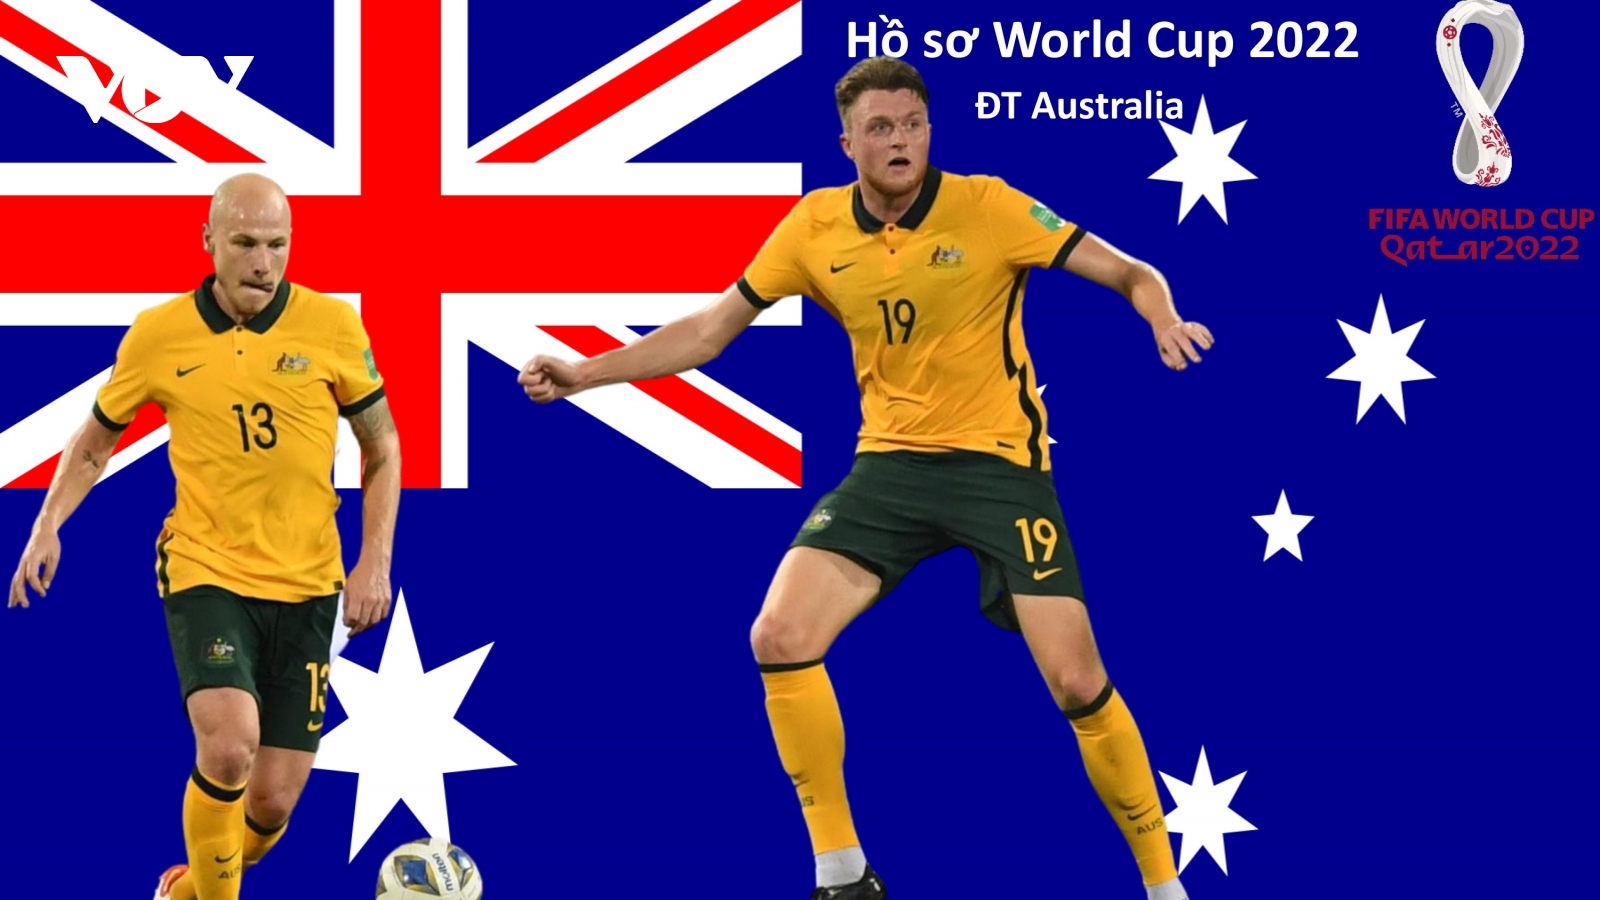 Hồ sơ các ĐT dự VCK World Cup 2022: Đội tuyển Australia